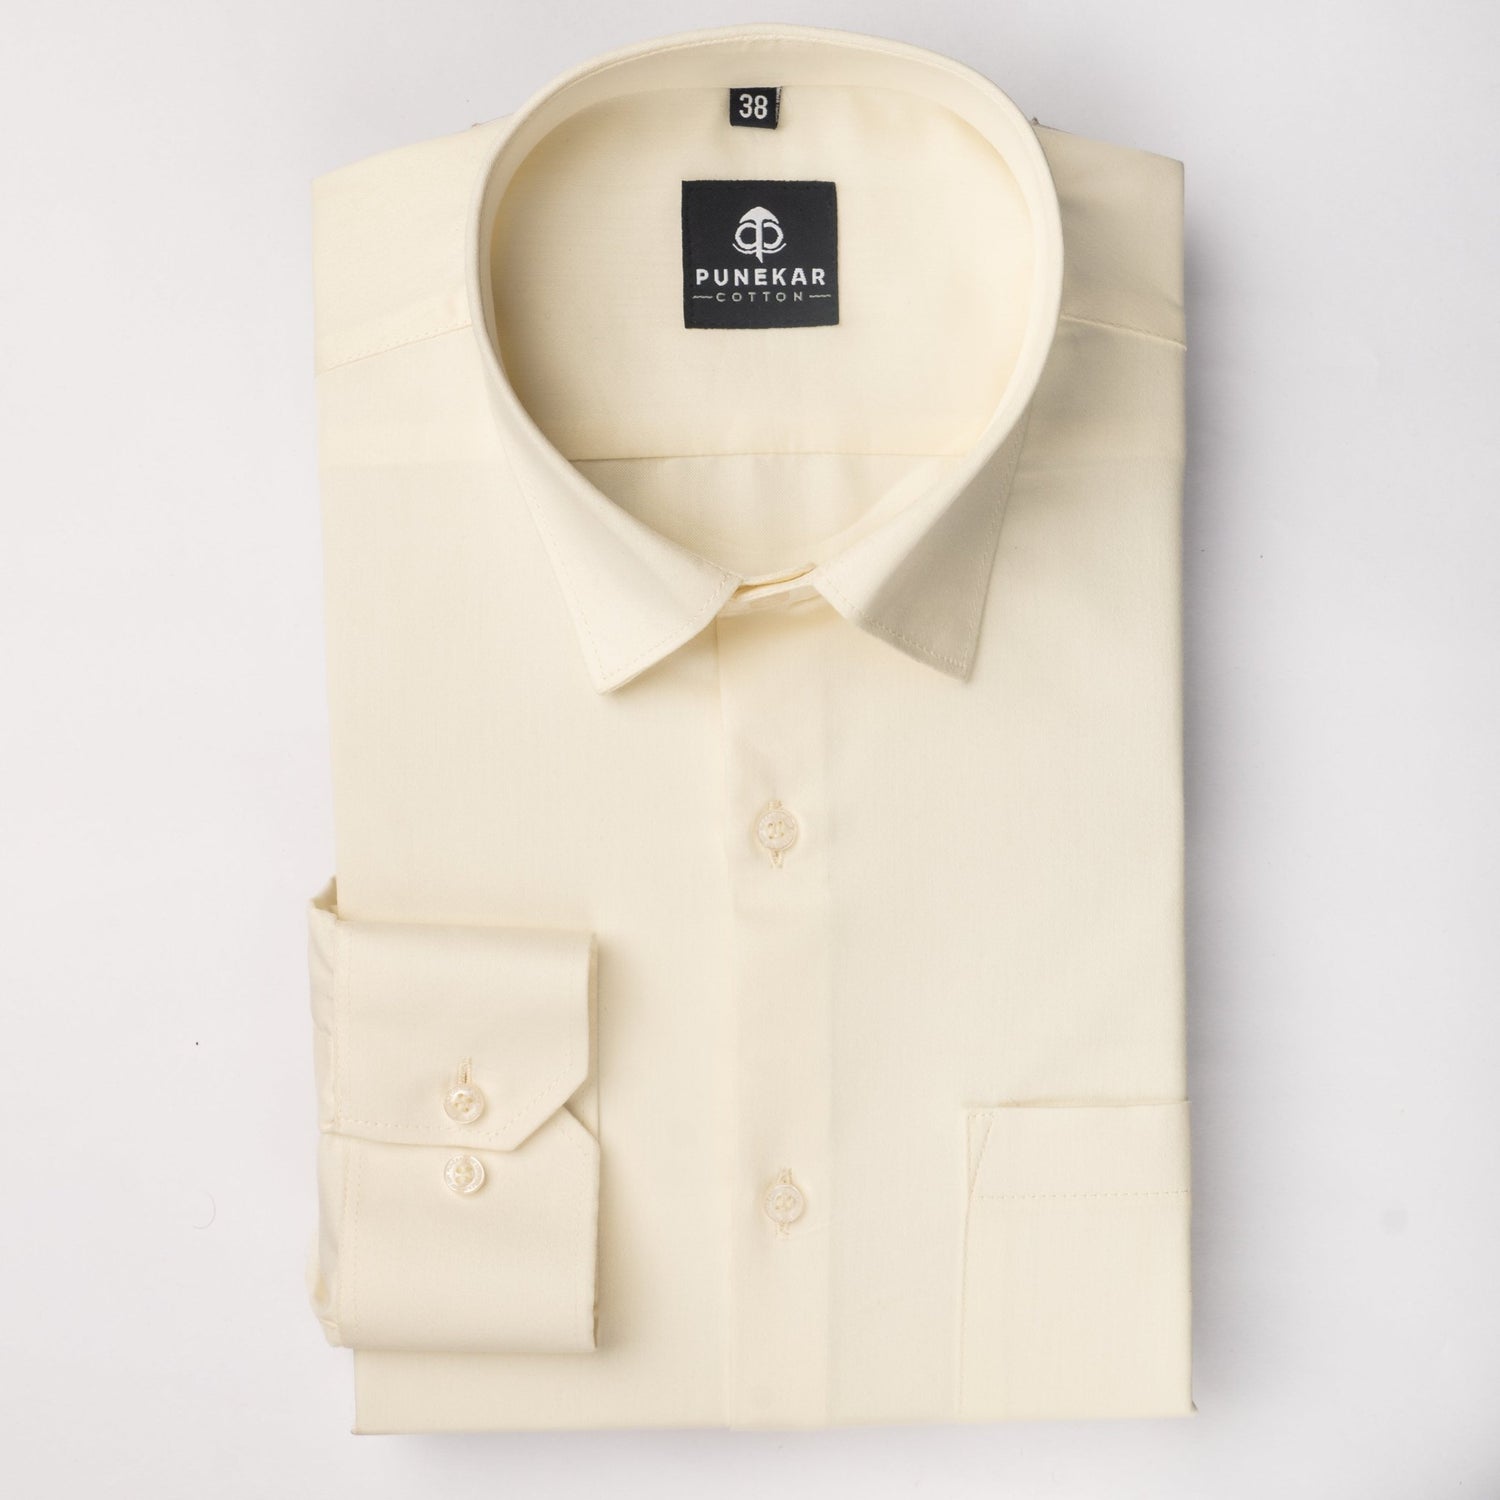 Off White Color Cotton Satin Shirt For Men - Punekar Cotton